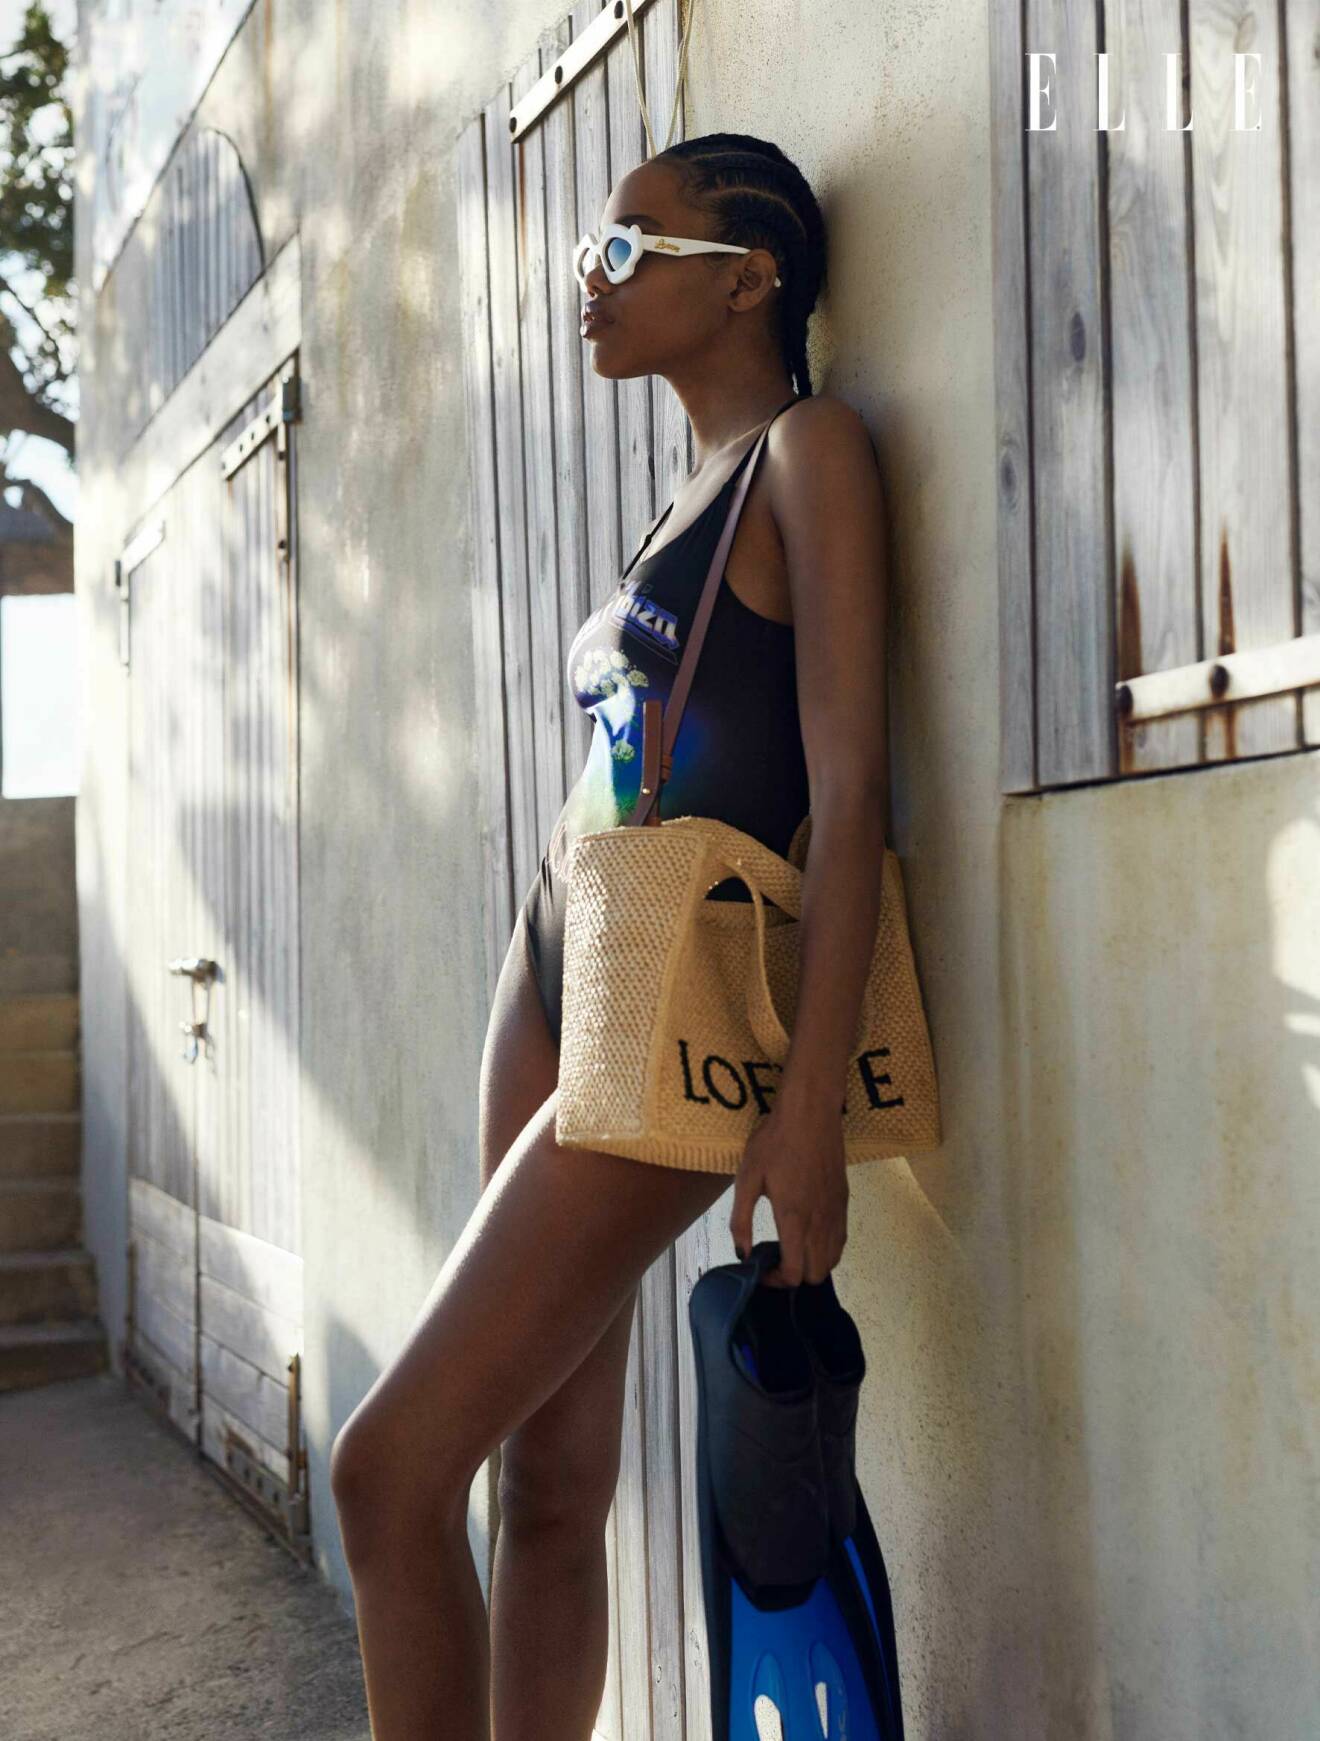 Fotomodellen står lutad mot en vägg, hon har på sig en mönstrad baddräkt, solglasögon och en strandväska, allt från Loewe